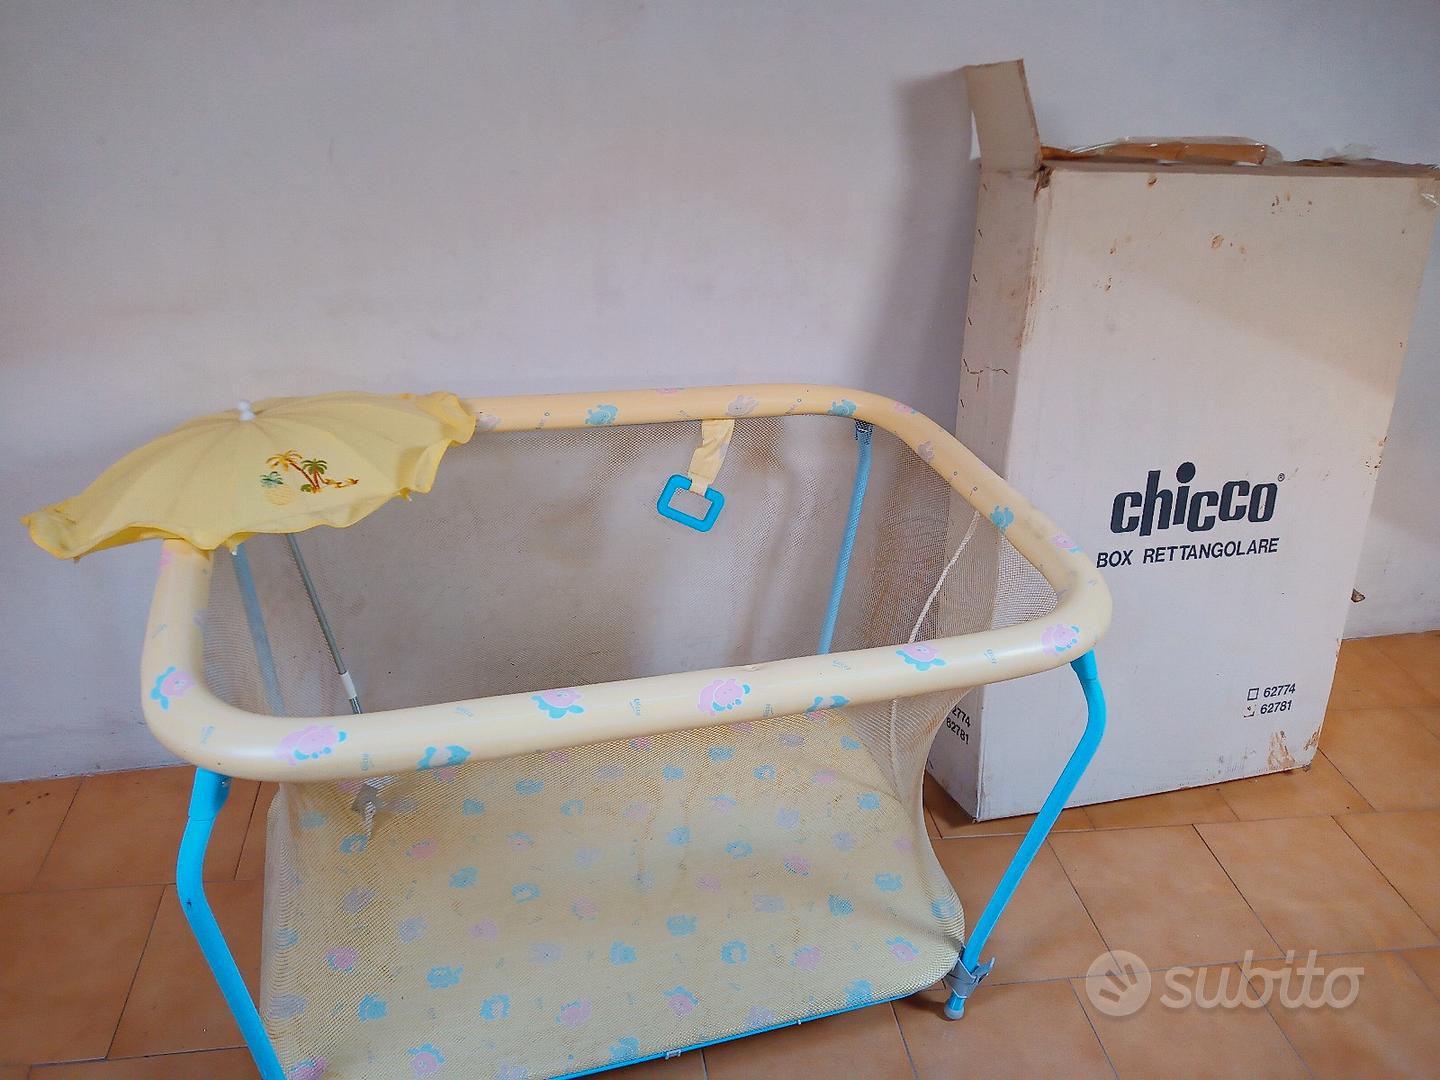 chicco box rettangolare - Tutto per i bambini In vendita a Verona